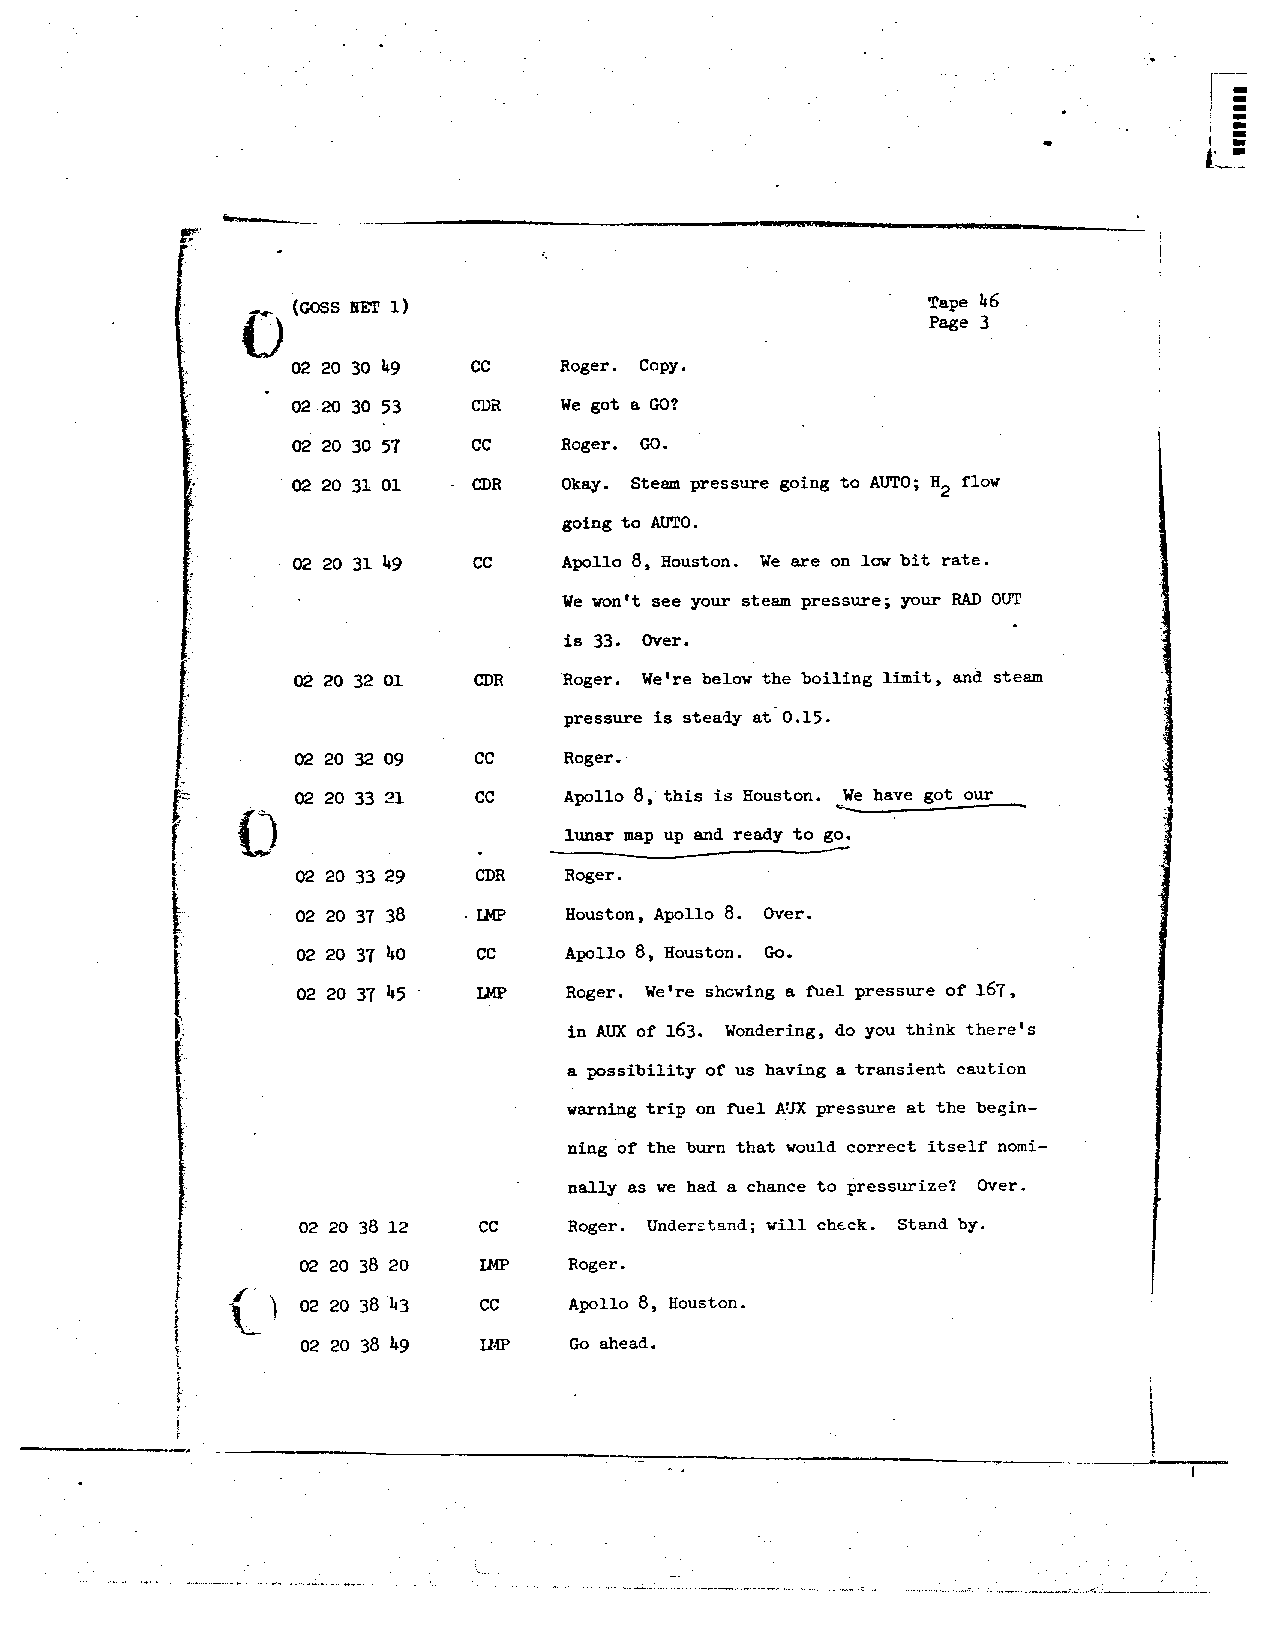 Page 355 of Apollo 8’s original transcript